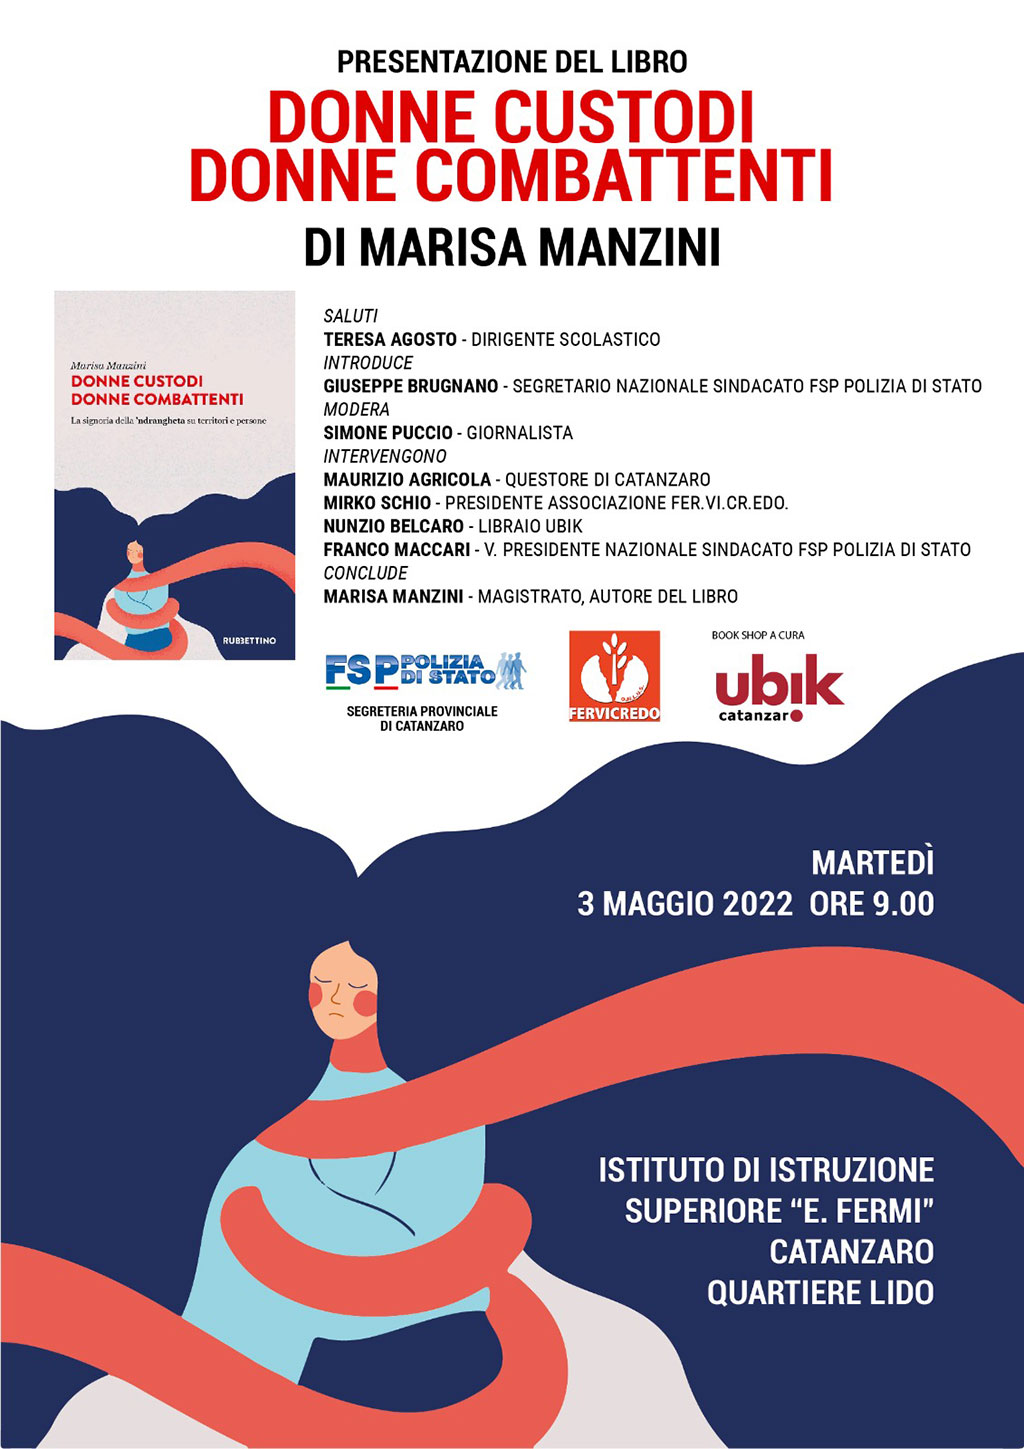 Donne custodi. Donne combattenti', il 3 maggio a Catanzaro presentazione  del nuovo libro del pm Manzini - il